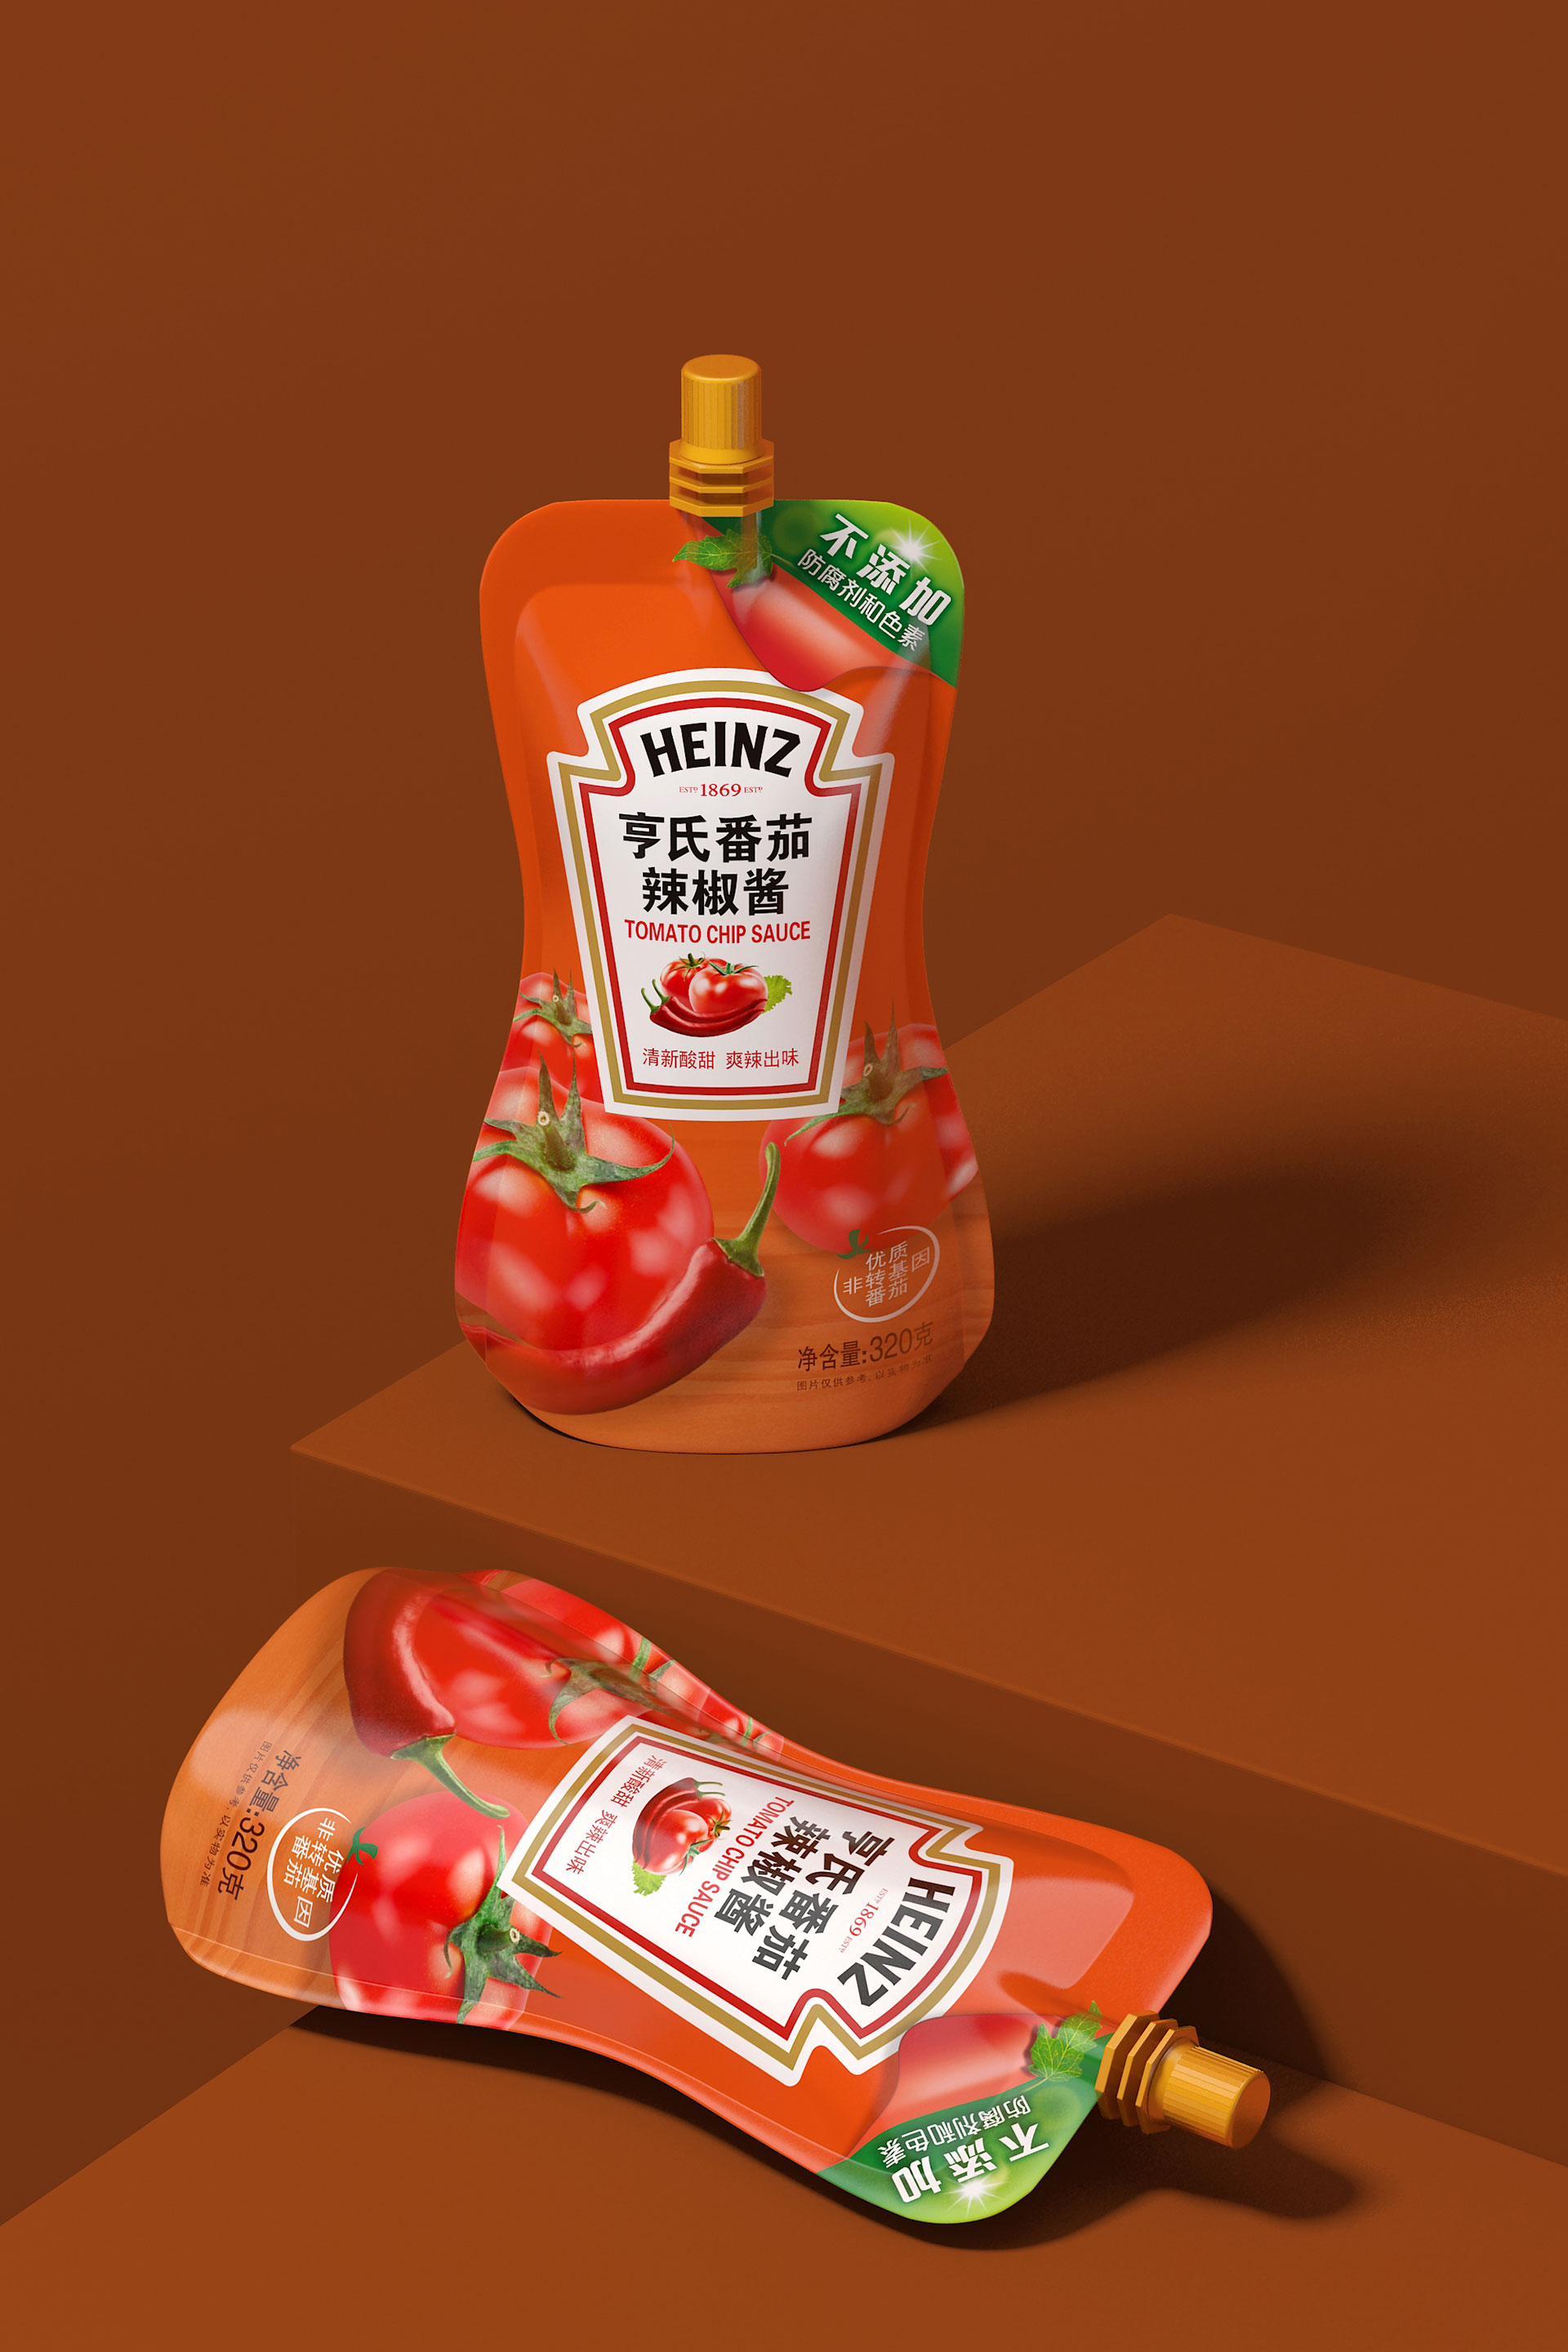 调味品包装设计|调味料包装设计|番茄酱包装设计|调味酱包装设计|辣椒酱包装设计|调味品包装设计公司